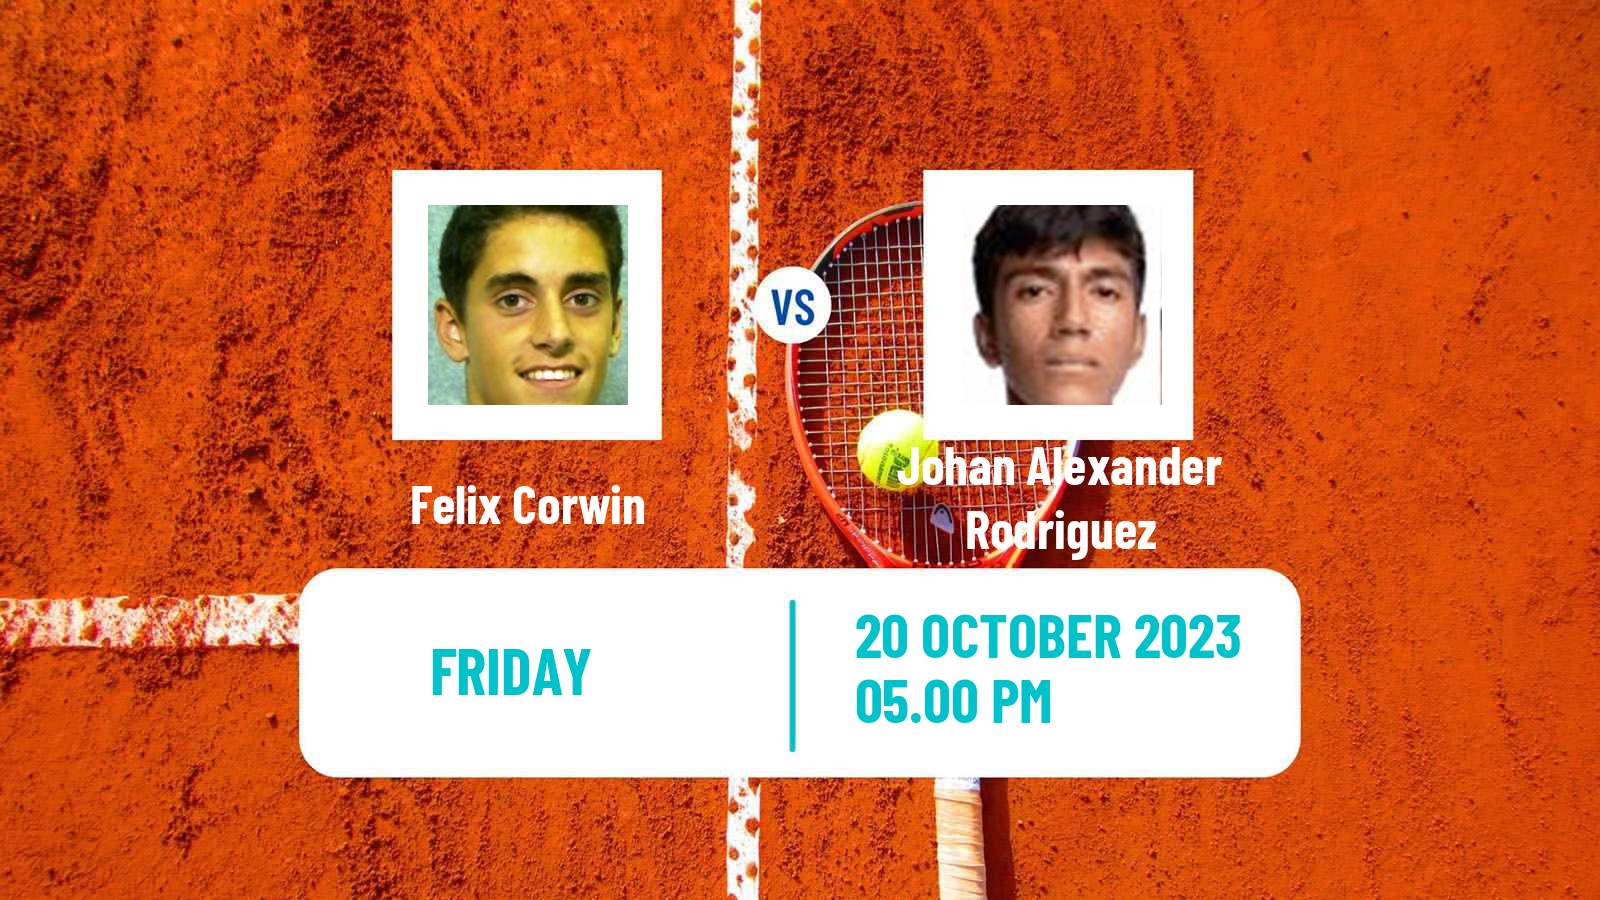 Tennis ITF M15 Morelia Men Felix Corwin - Johan Alexander Rodriguez